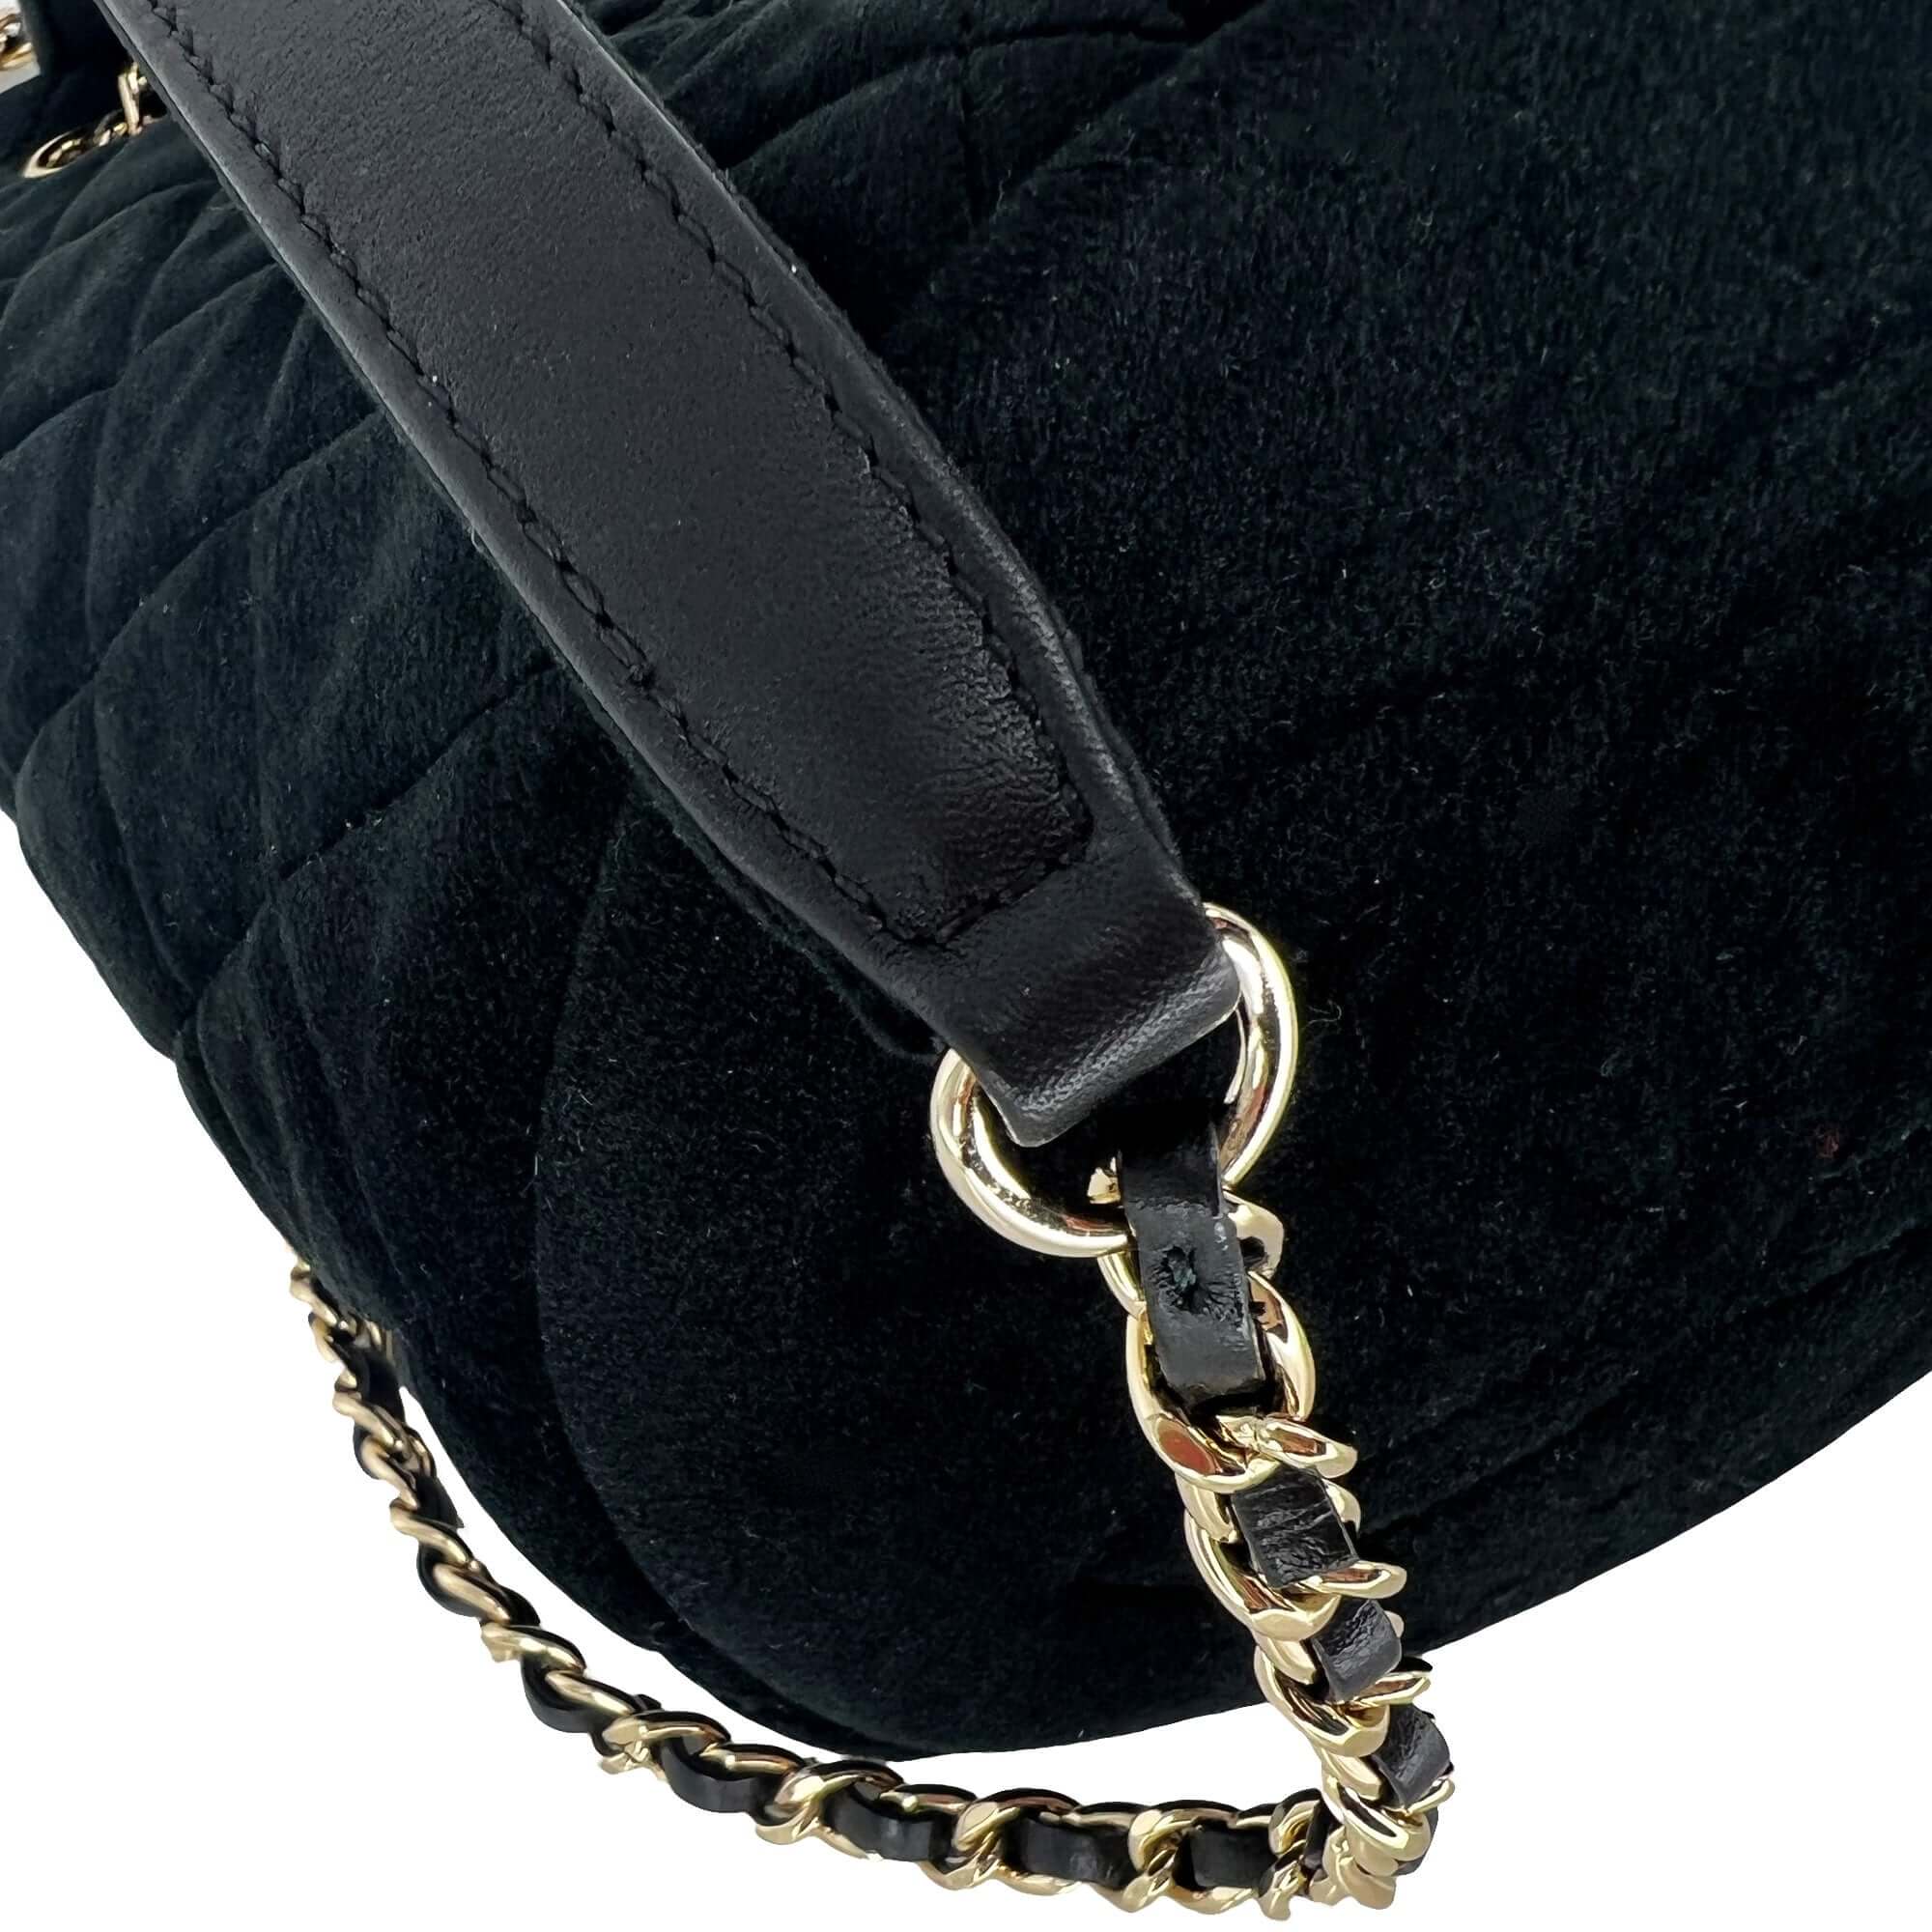 Chanel velvet pearl crush mini drawstring bag